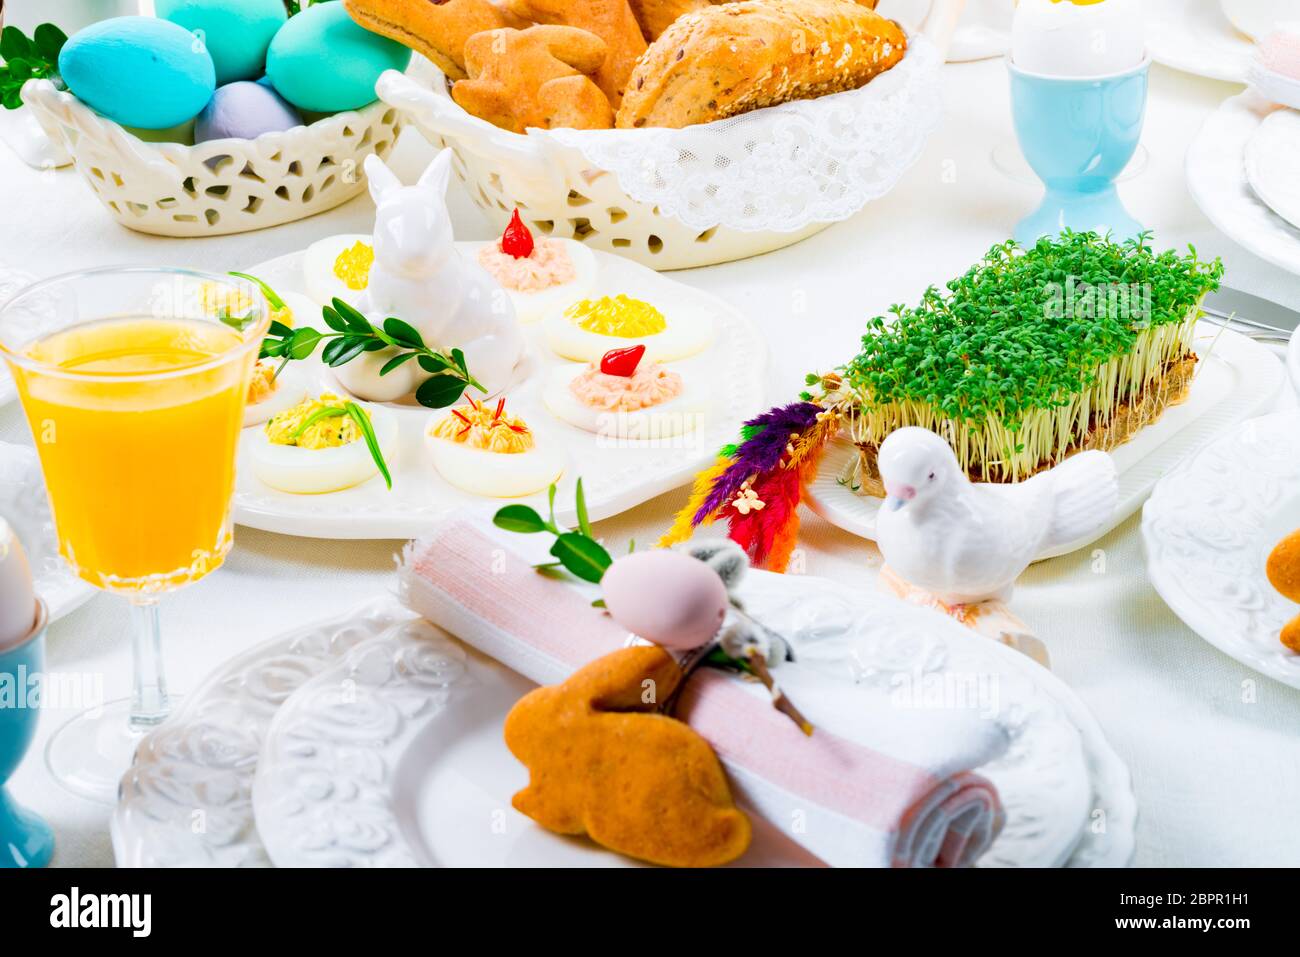 Une ambiance festive et colorée décoration de table de Pâques Banque D'Images